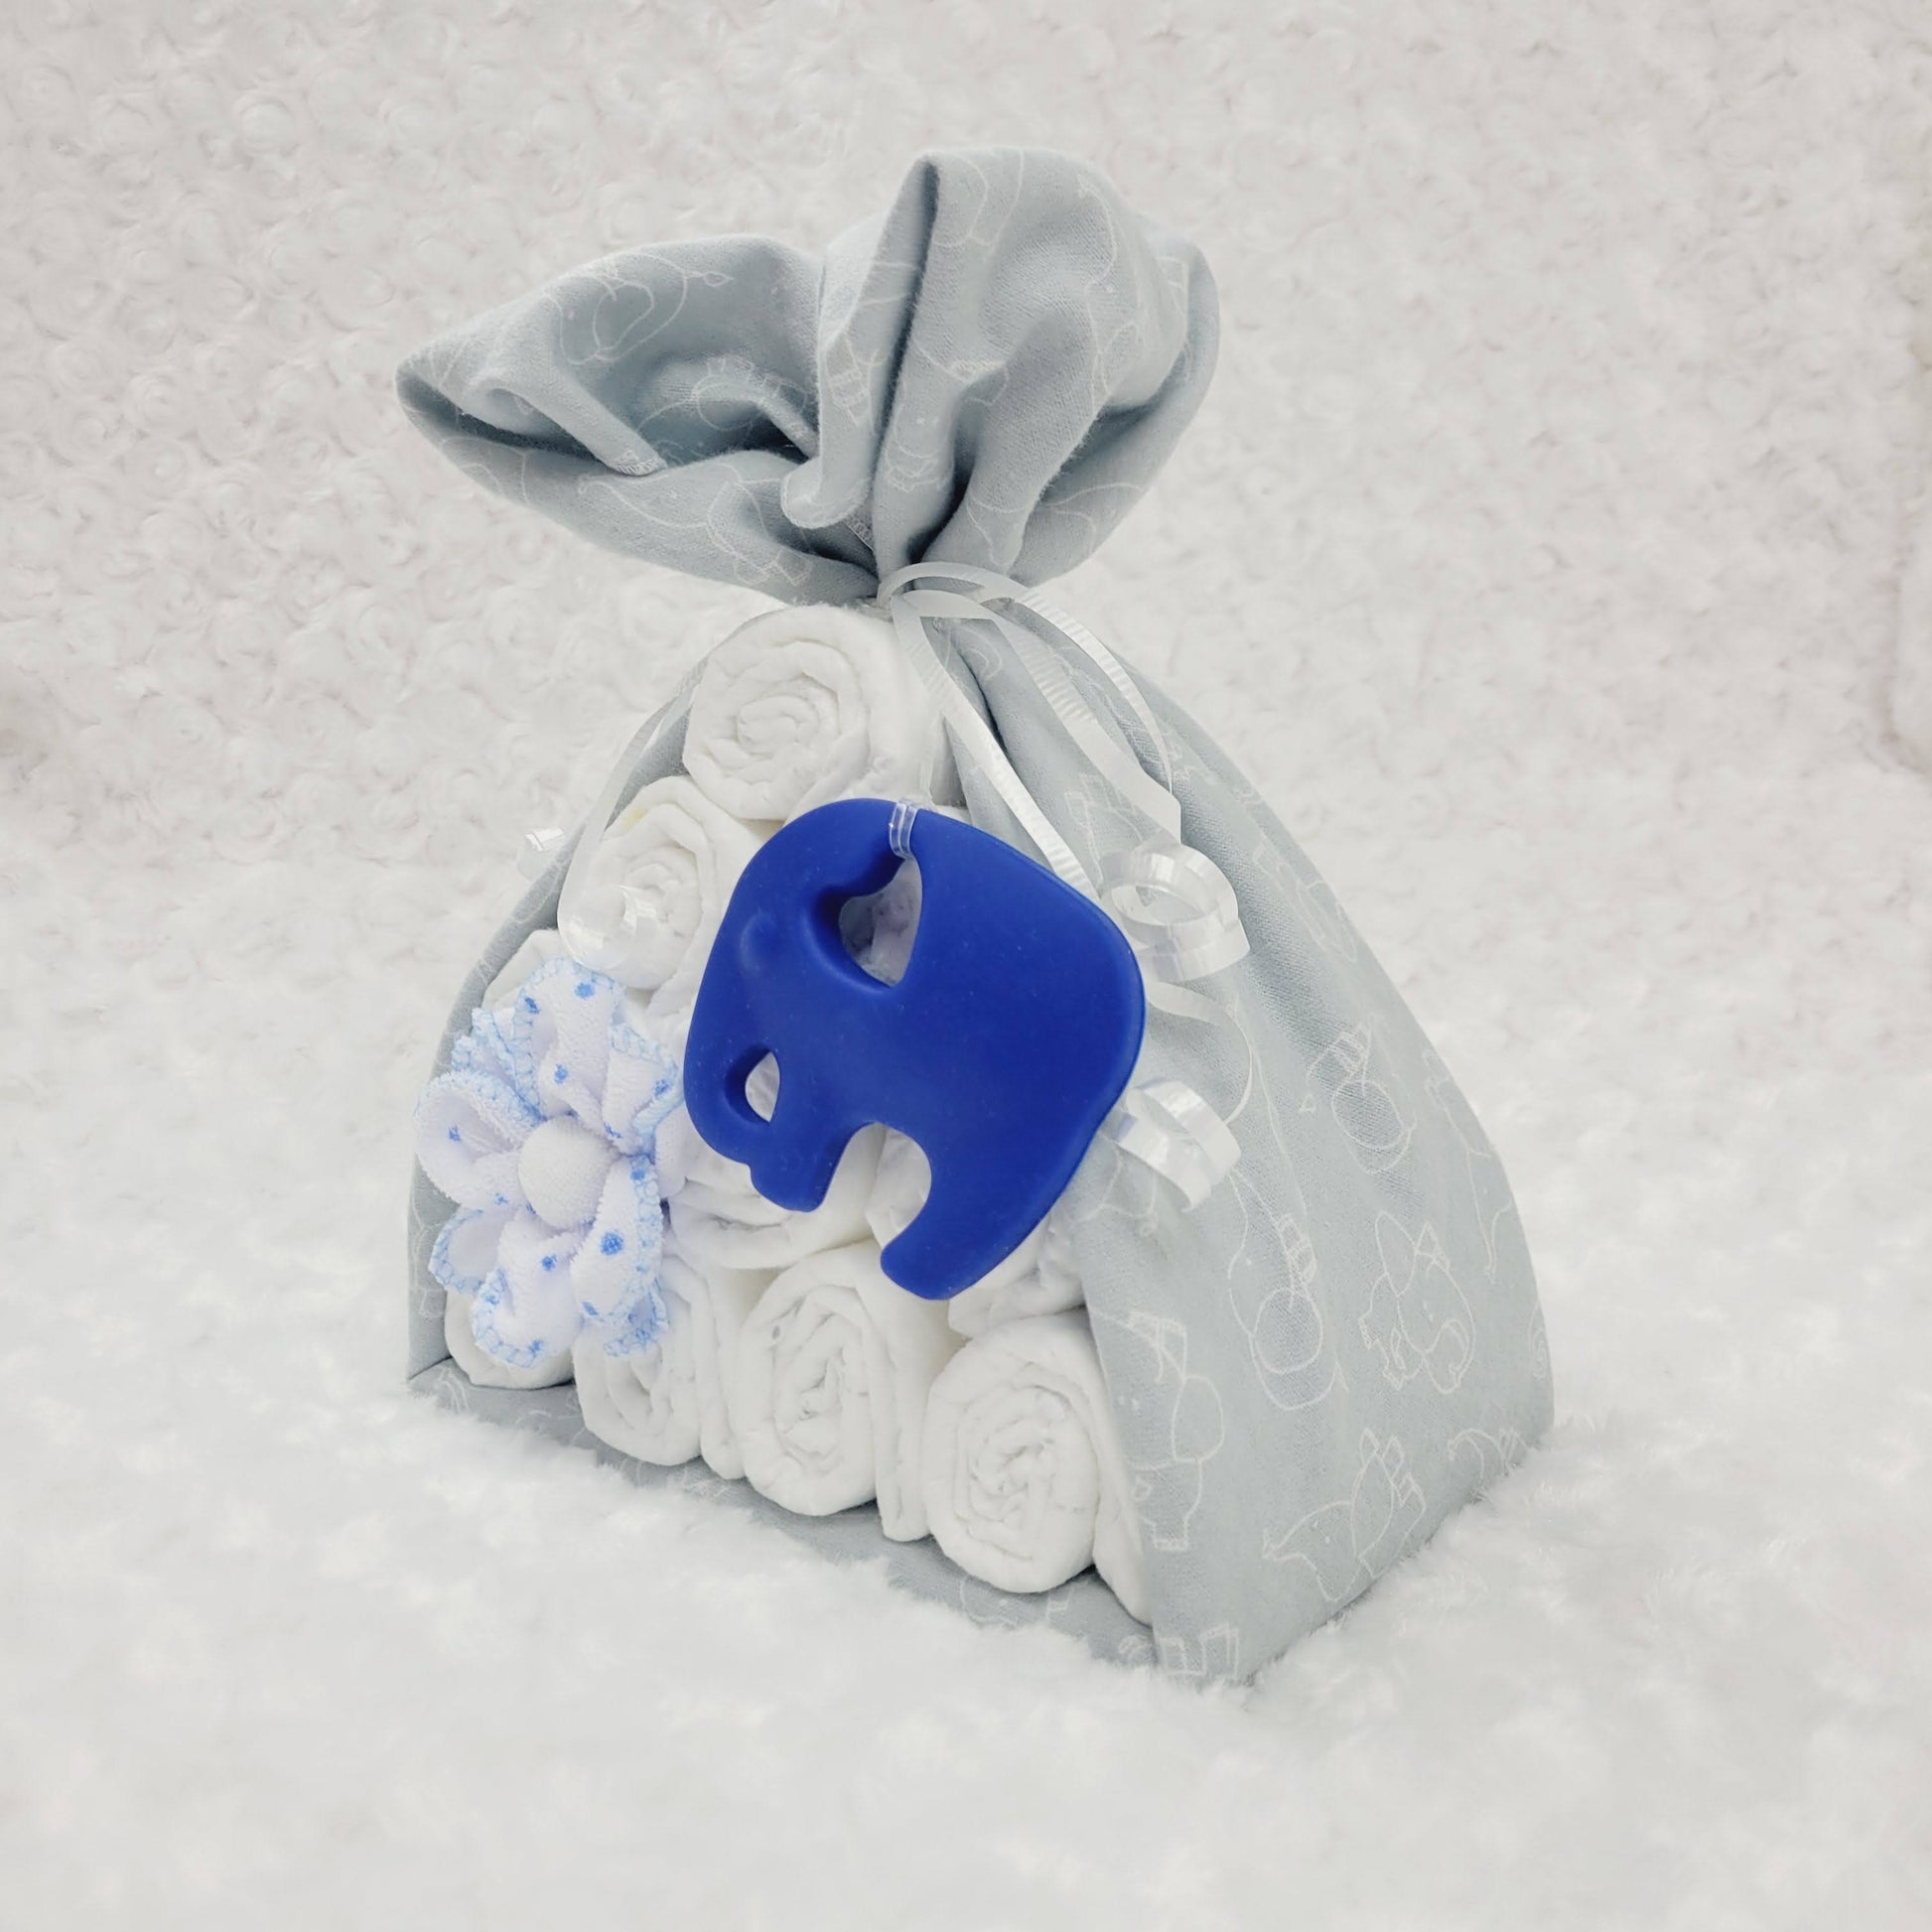 Baluchon avec une couverture gris en flanelle avec un imprimé de petits éléphants blanc. Le baluchon contient 10 couches pour bébé de taille #2 avec 2 débarbouillettes disposé en forme de fleur. Complété d'un jouet de dentition en silicone en forme d'éléphant de couleur bleu royal.